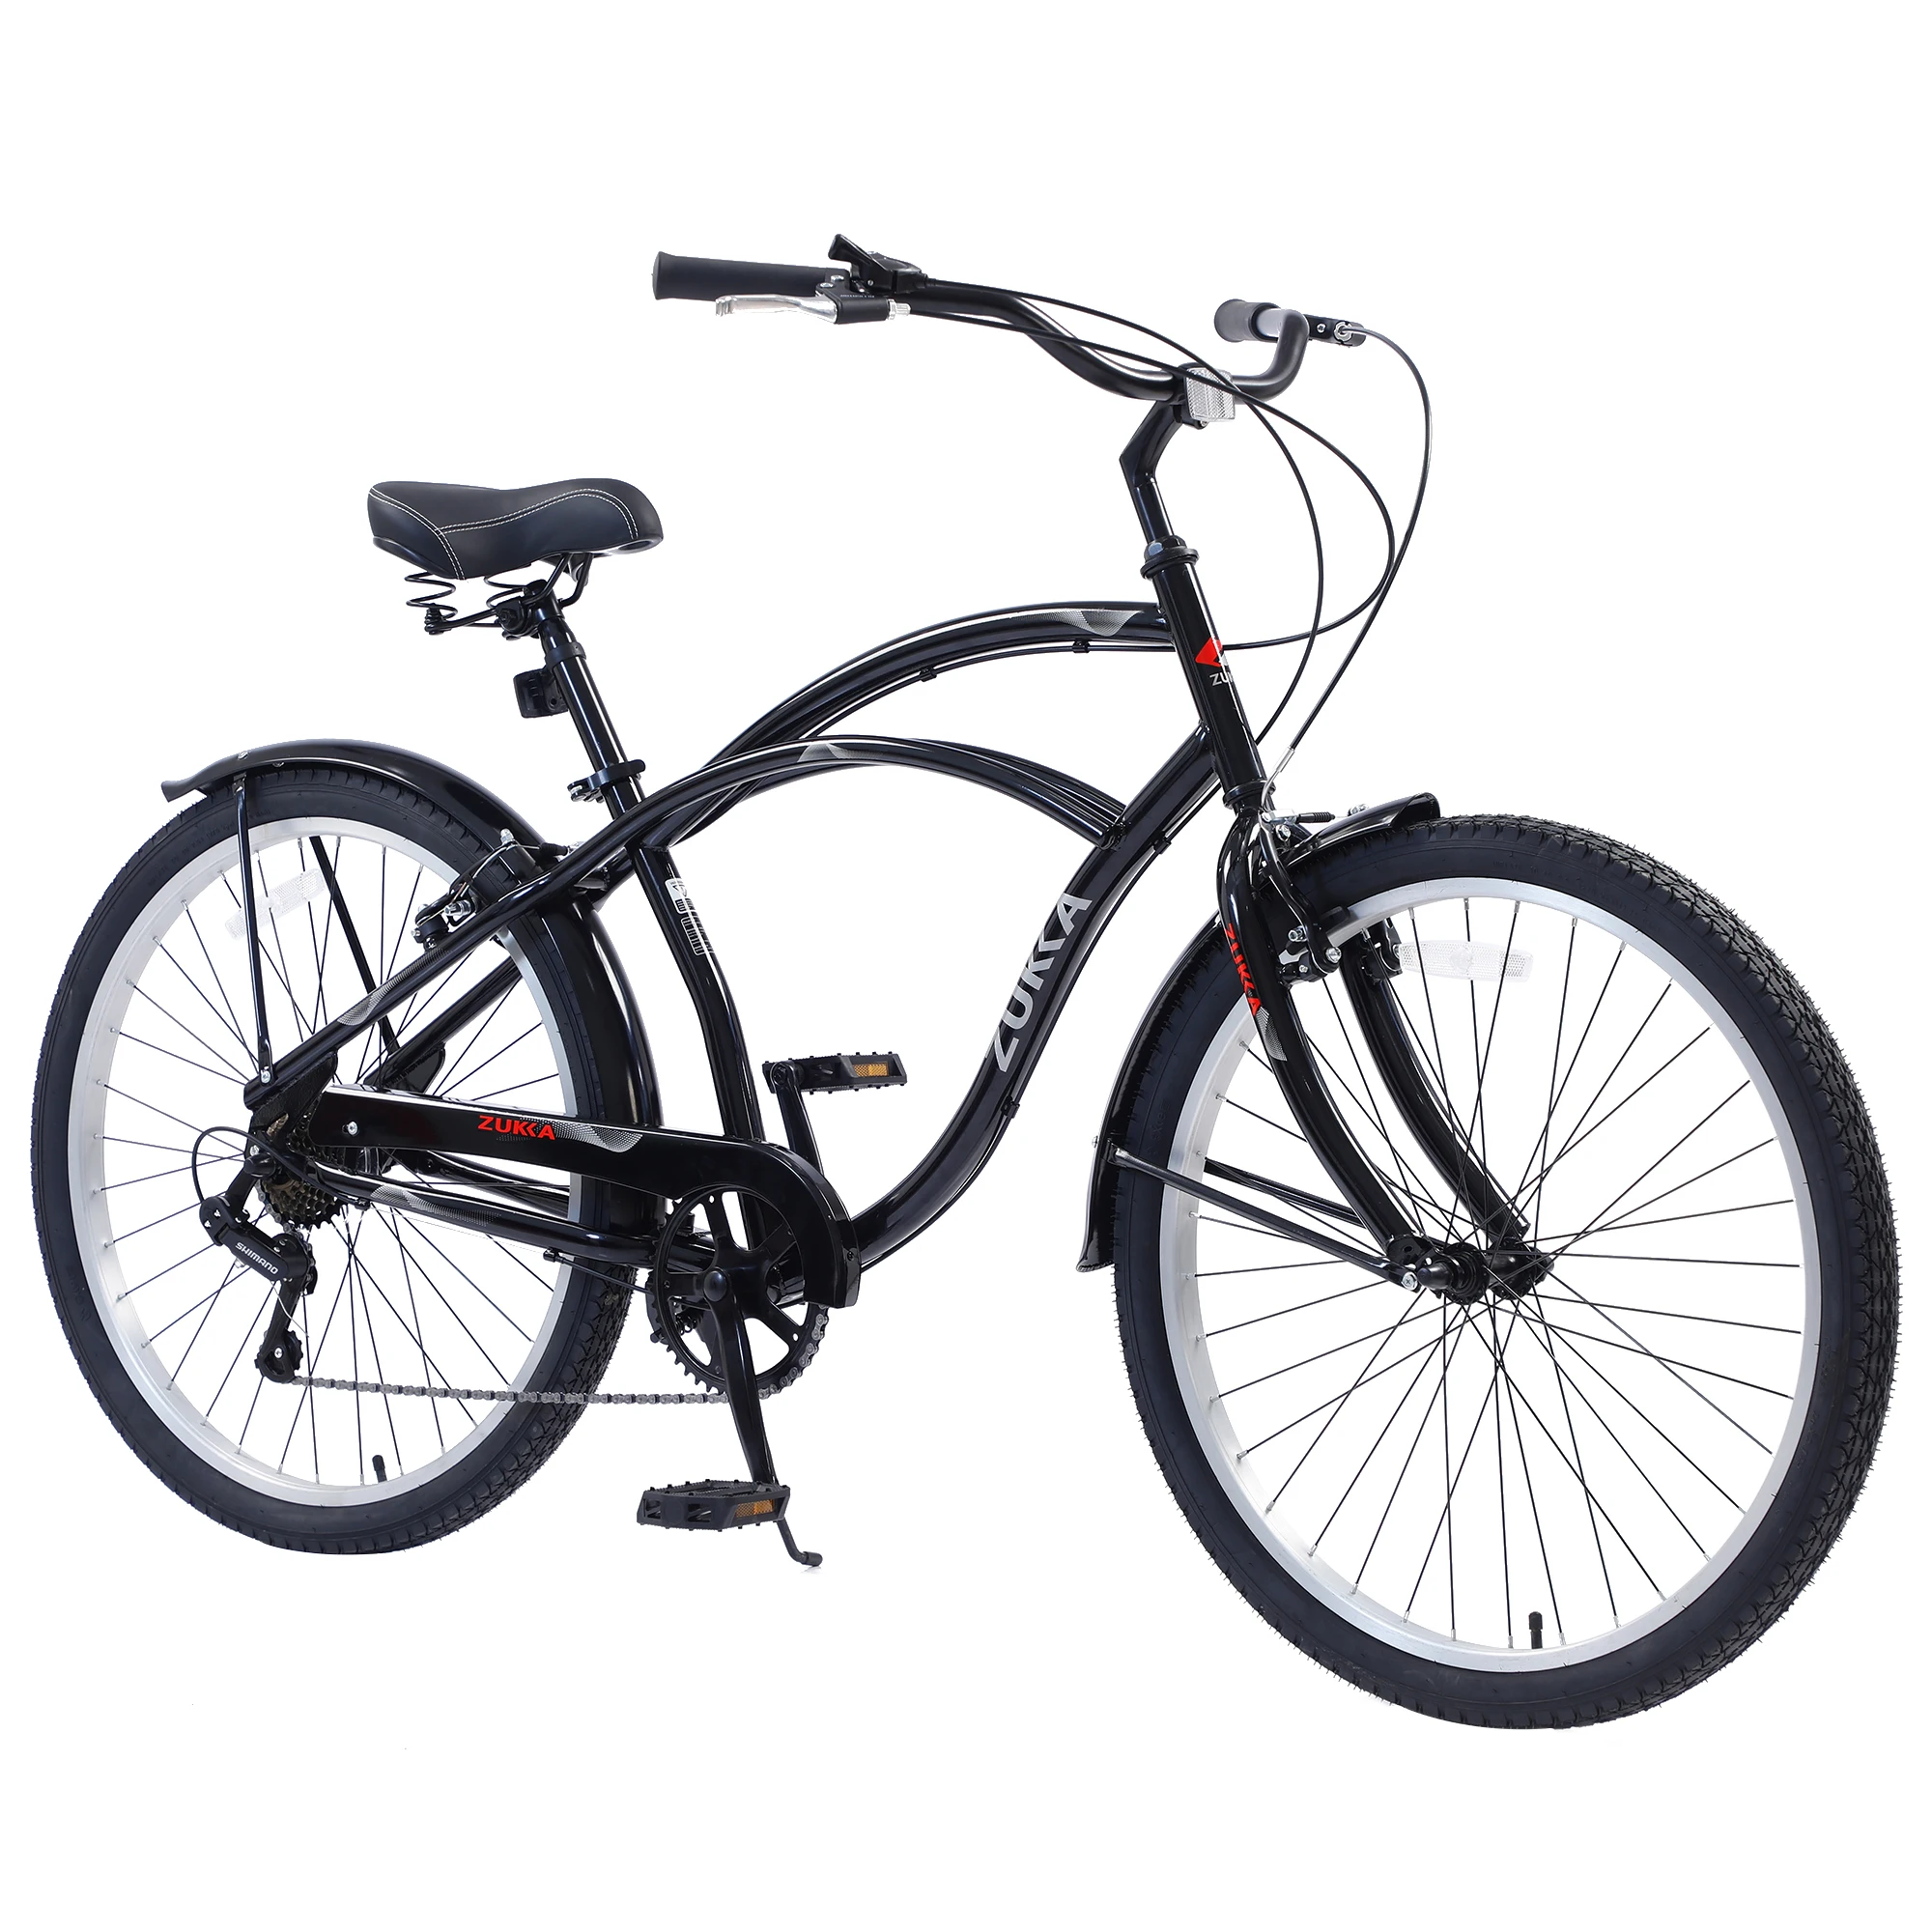 

Дорожный велосипед для мужчин, размер колес 26 дюймов, 7 скоростей, для горных велосипедов, прогулок на пляже